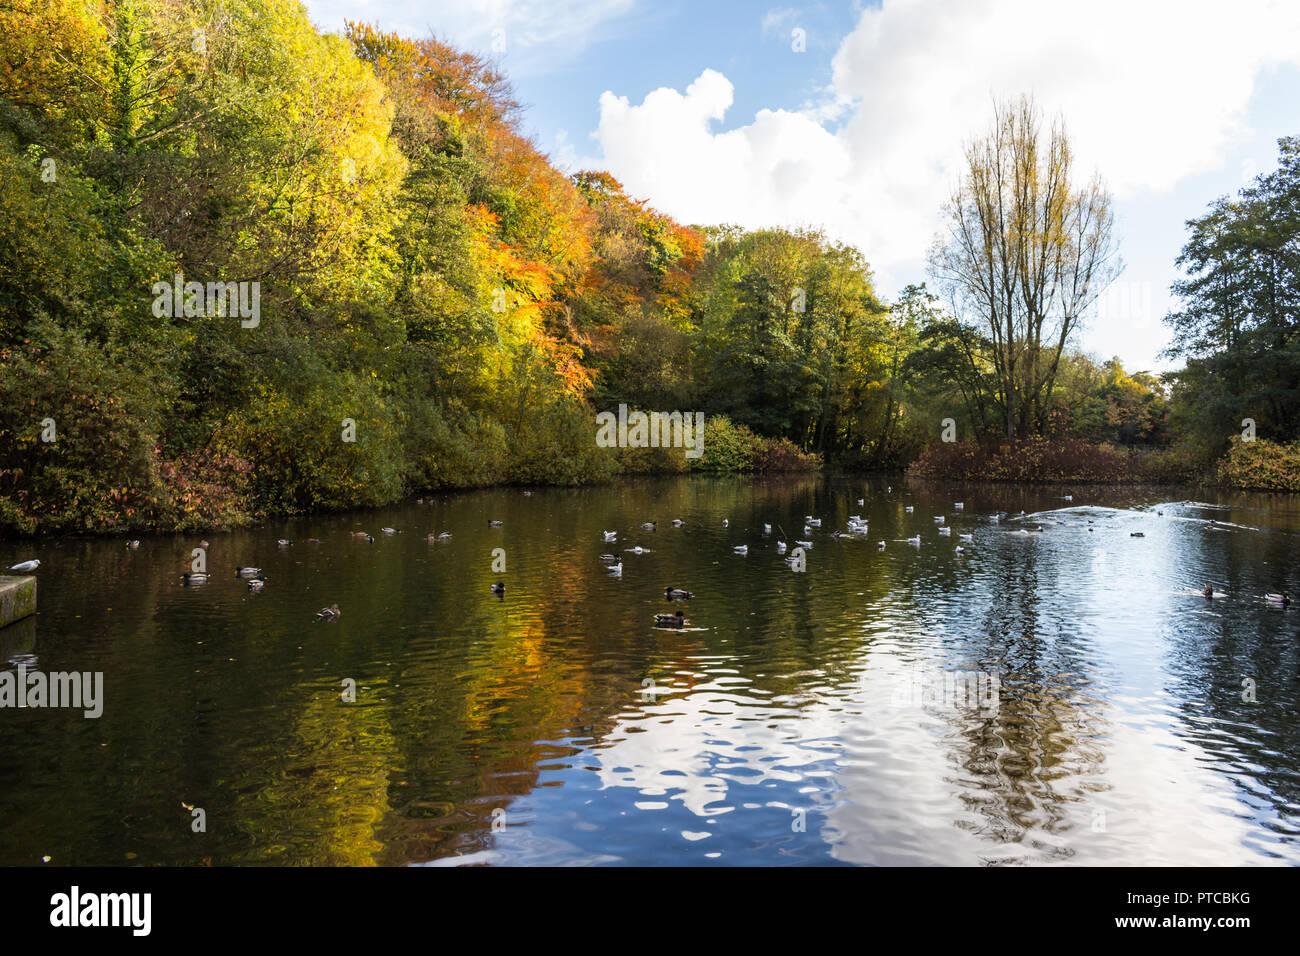 Herbstfarben im Wasser mit Enten wider. Duncans Dam, Lisburn, County Antrim, Nordirland. Stockfoto